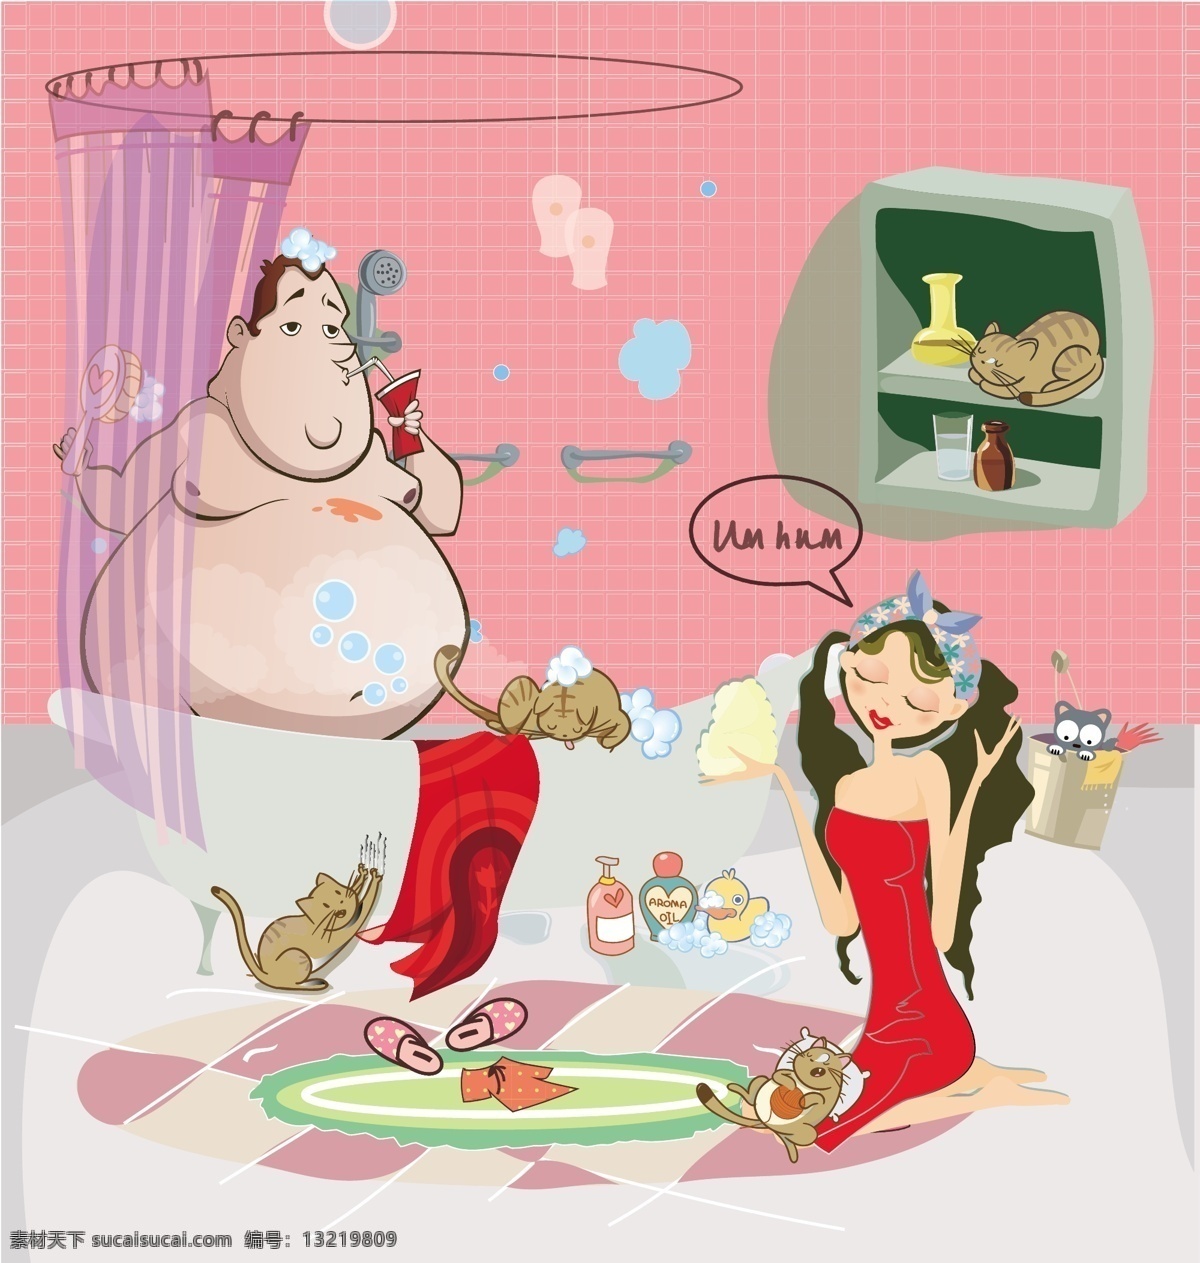 快乐 一家人 插画 猫 美女 家 胖子 男人 粉色 洗澡 浴缸 小黄鸭 肥皂泡 浴室 可乐